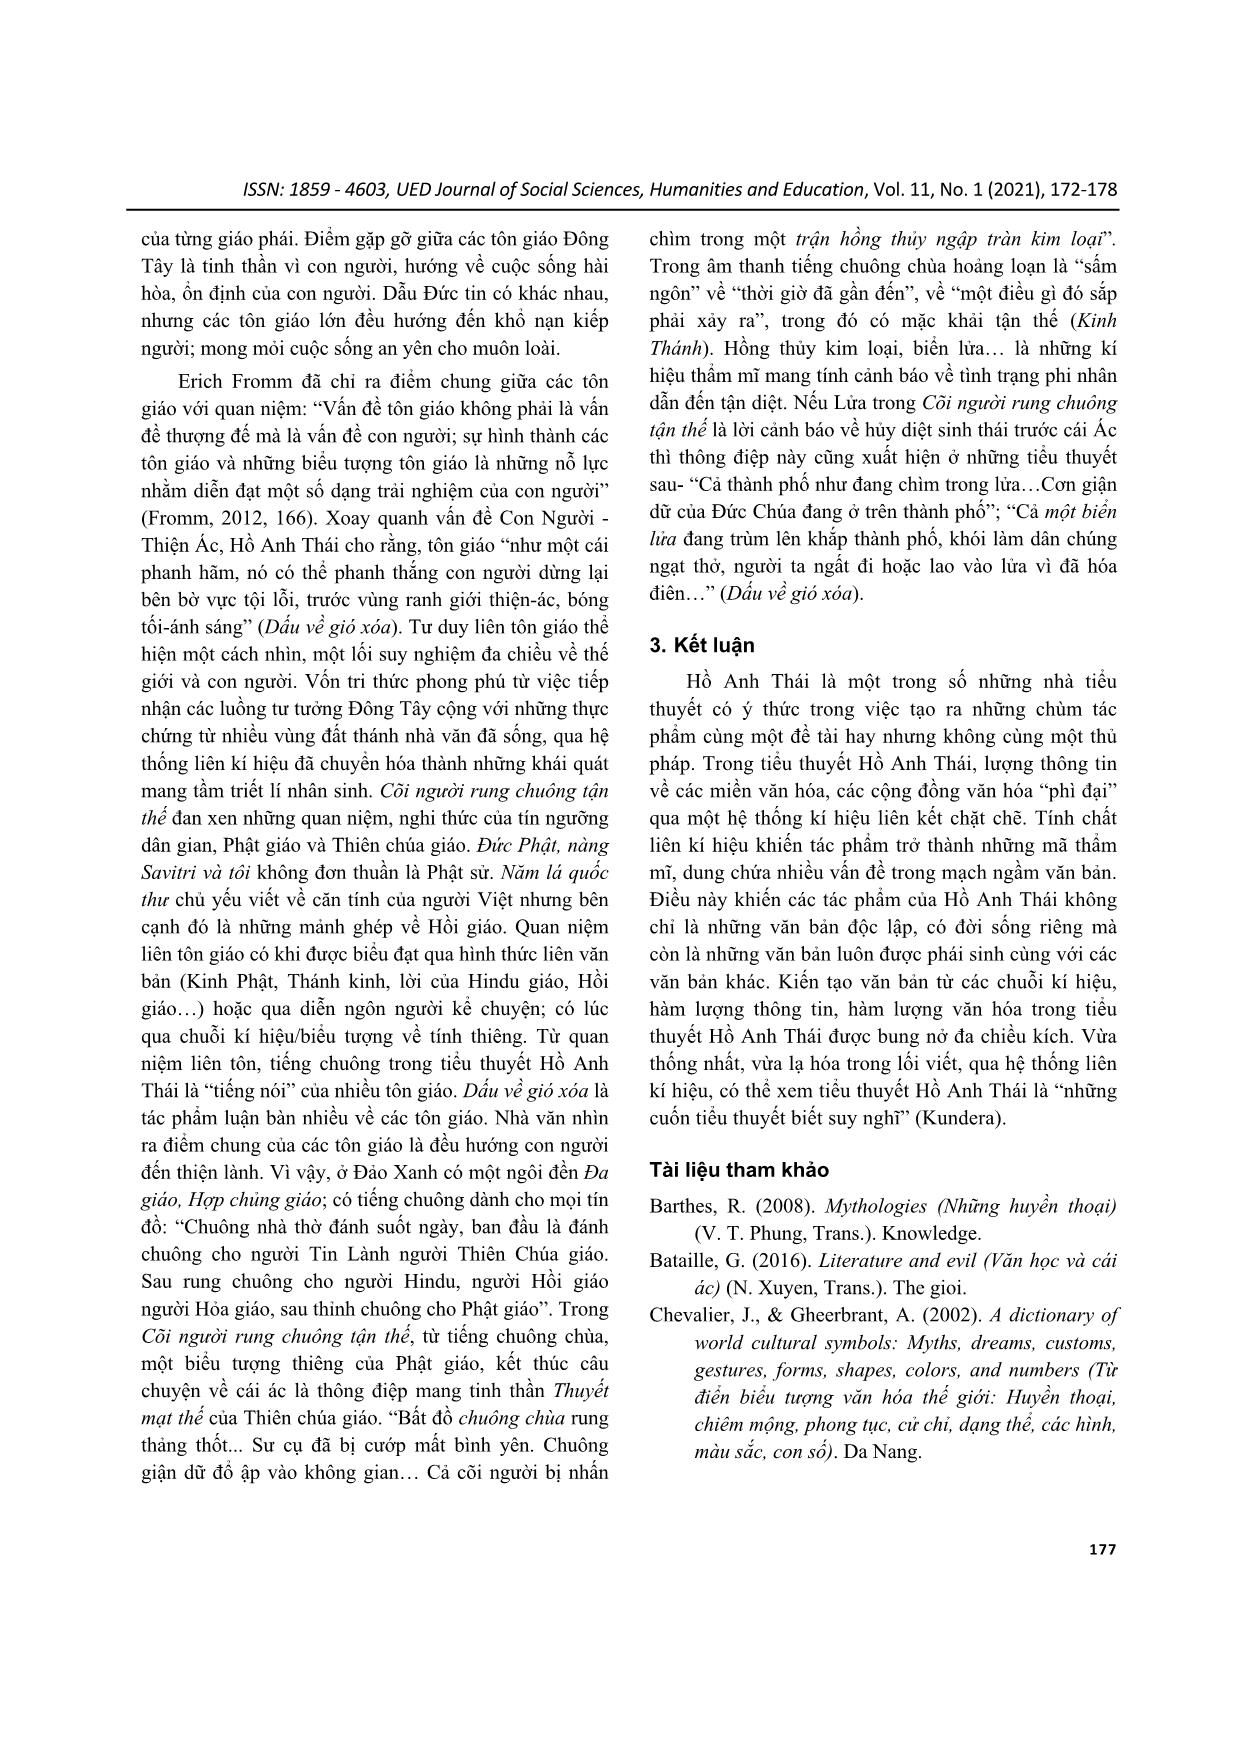 Liên kí hiệu trong tiểu thuyết Hồ Anh Thái trang 6